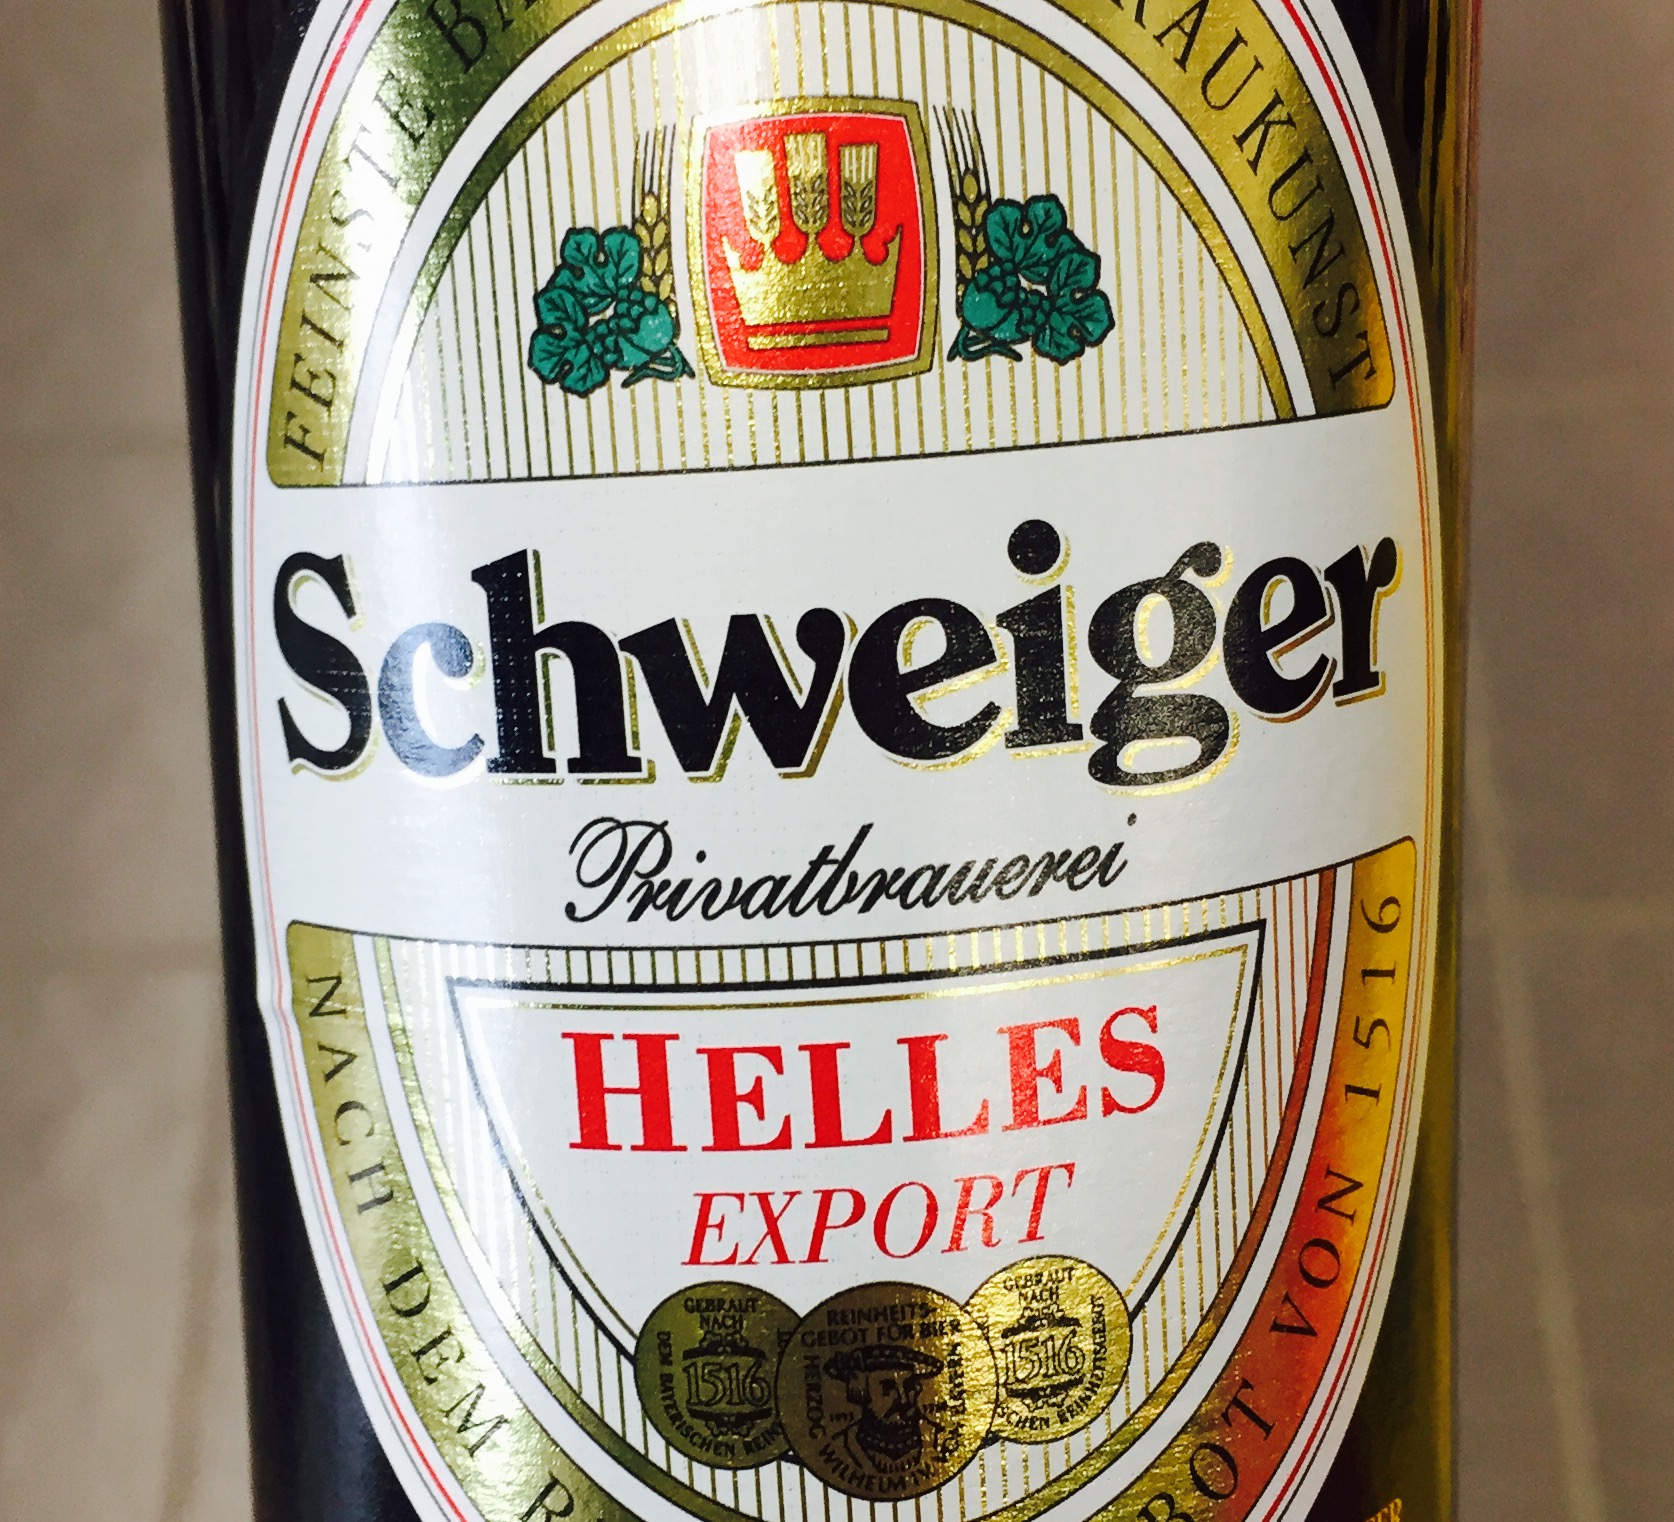 Schweiger - Helles Export